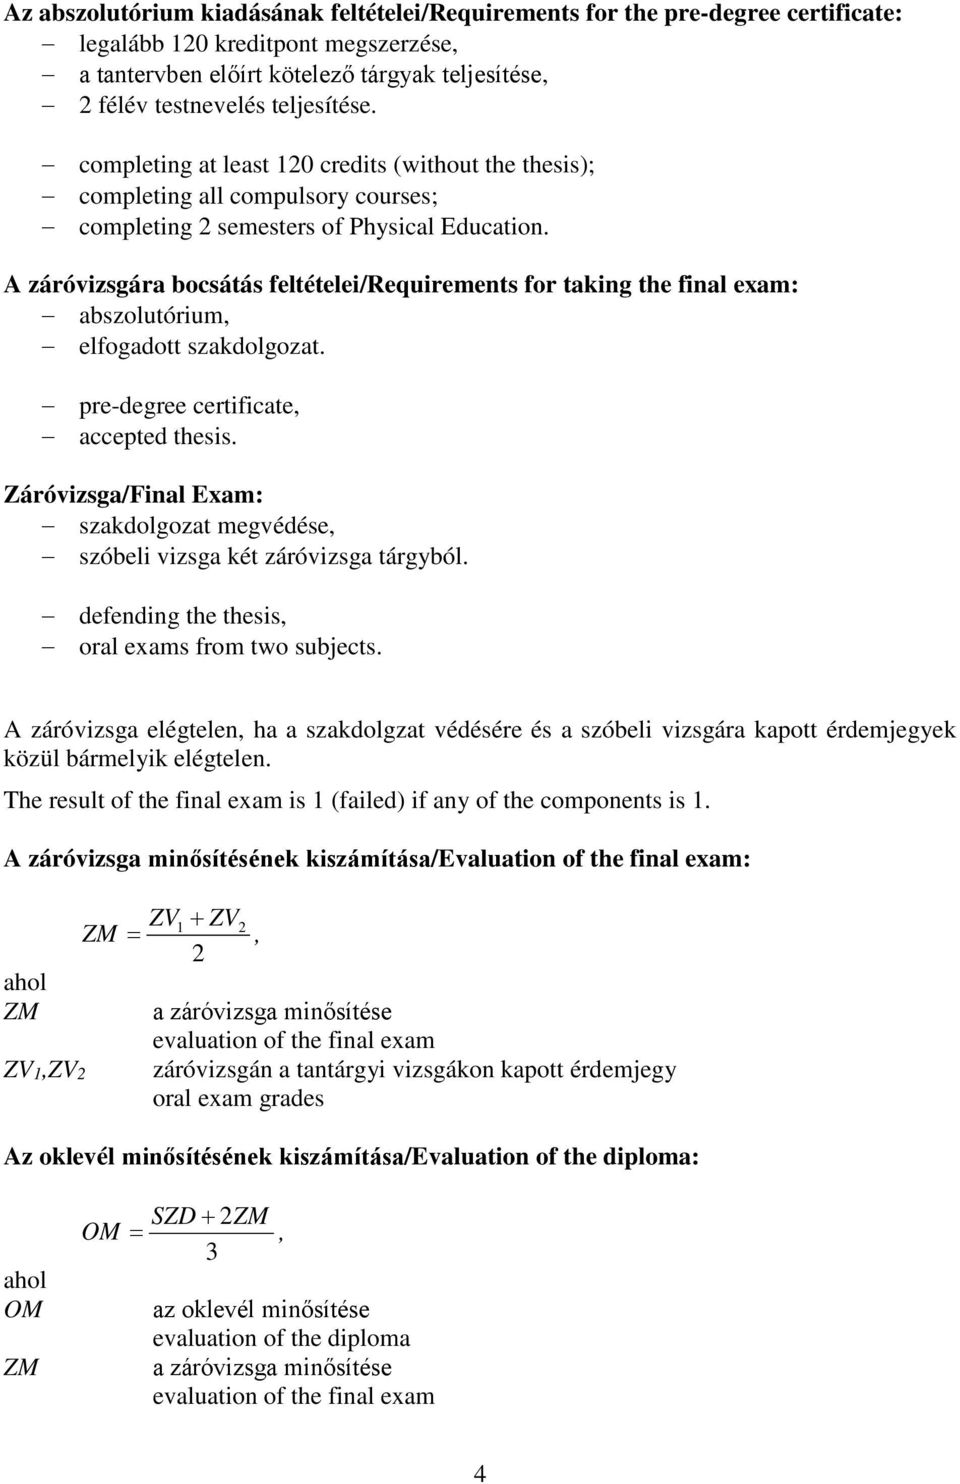 A záróvizsgára bocsátás feltételei/requirements for taking the final exam: abszolutórium, elfogadott szakdolgozat. pre-degree certificate, accepted thesis.